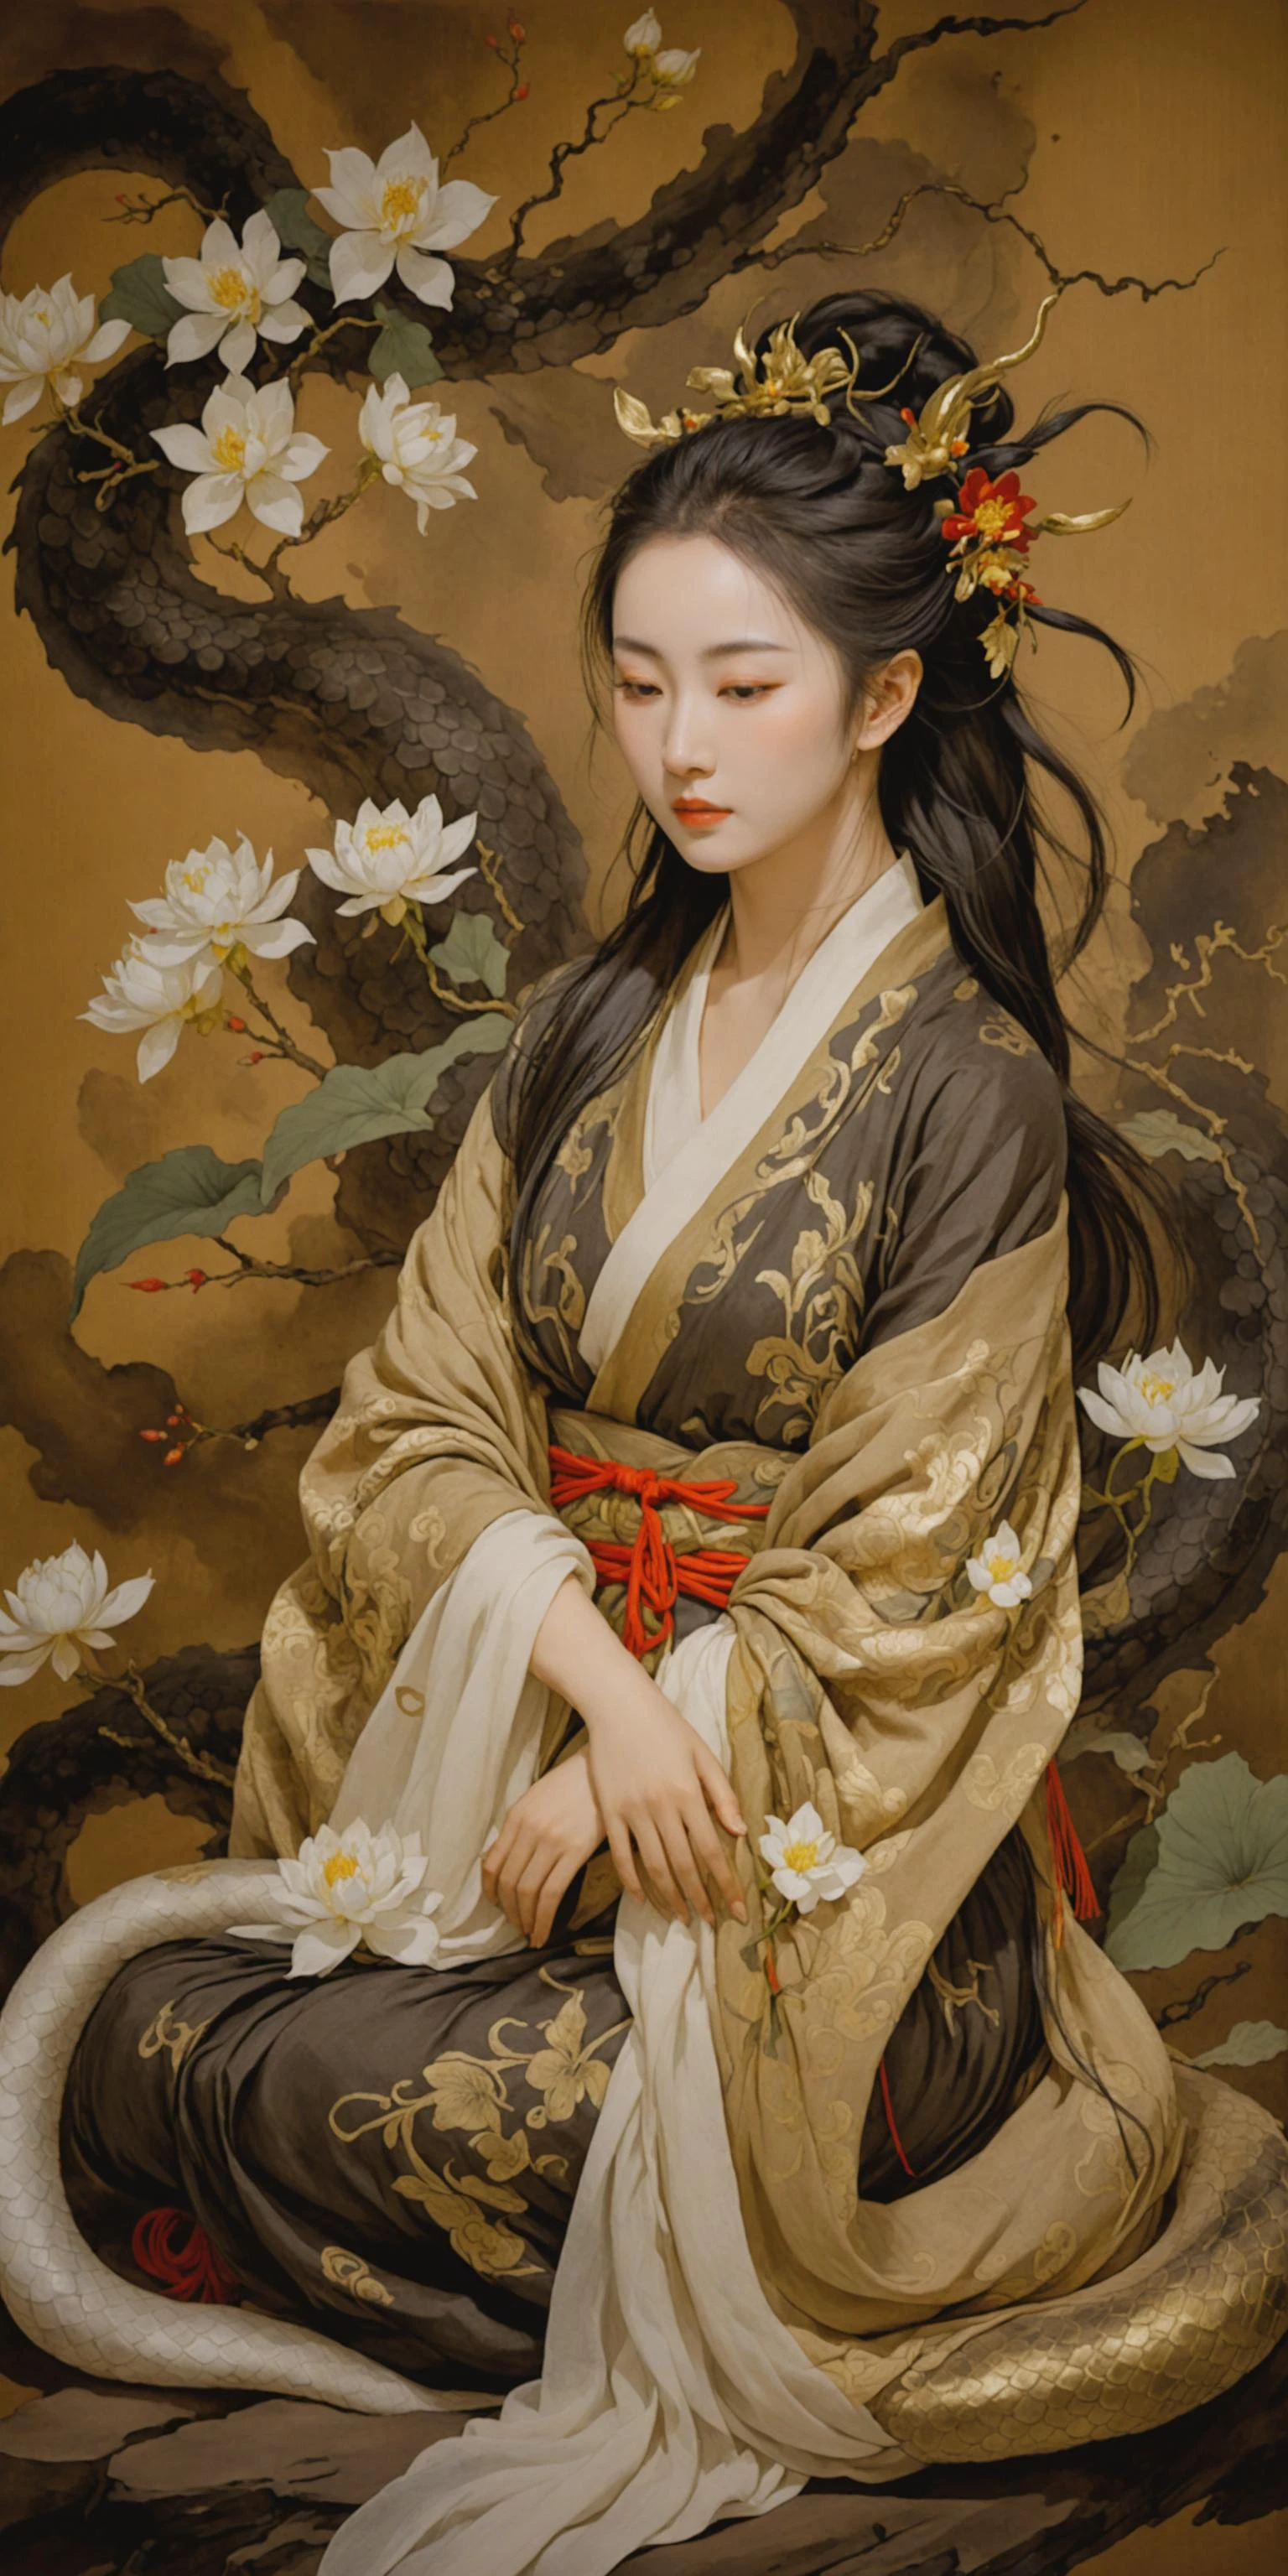 ゴールデンイースト,中国の水墨画,マジクミックス_スタイル,穏やかで瞑想的な姿勢で優雅に座っている女神,彼女の髪は長く、白い花で飾られている,彼女の体は蛇皮のような質感の薄いショールに包まれている,中央に全身を配置,完璧な手,完璧な足,光る花びら,強い影,(最高品質,傑作:1.3),超リアル,超高解像度,8k壁紙,映画のような,パノラマ,暗い背景,非常に詳細な,神話,古代,原生的,神話的な_雰囲気,すごい_風景,カラフル,ボリューム照明,チンダル効果,